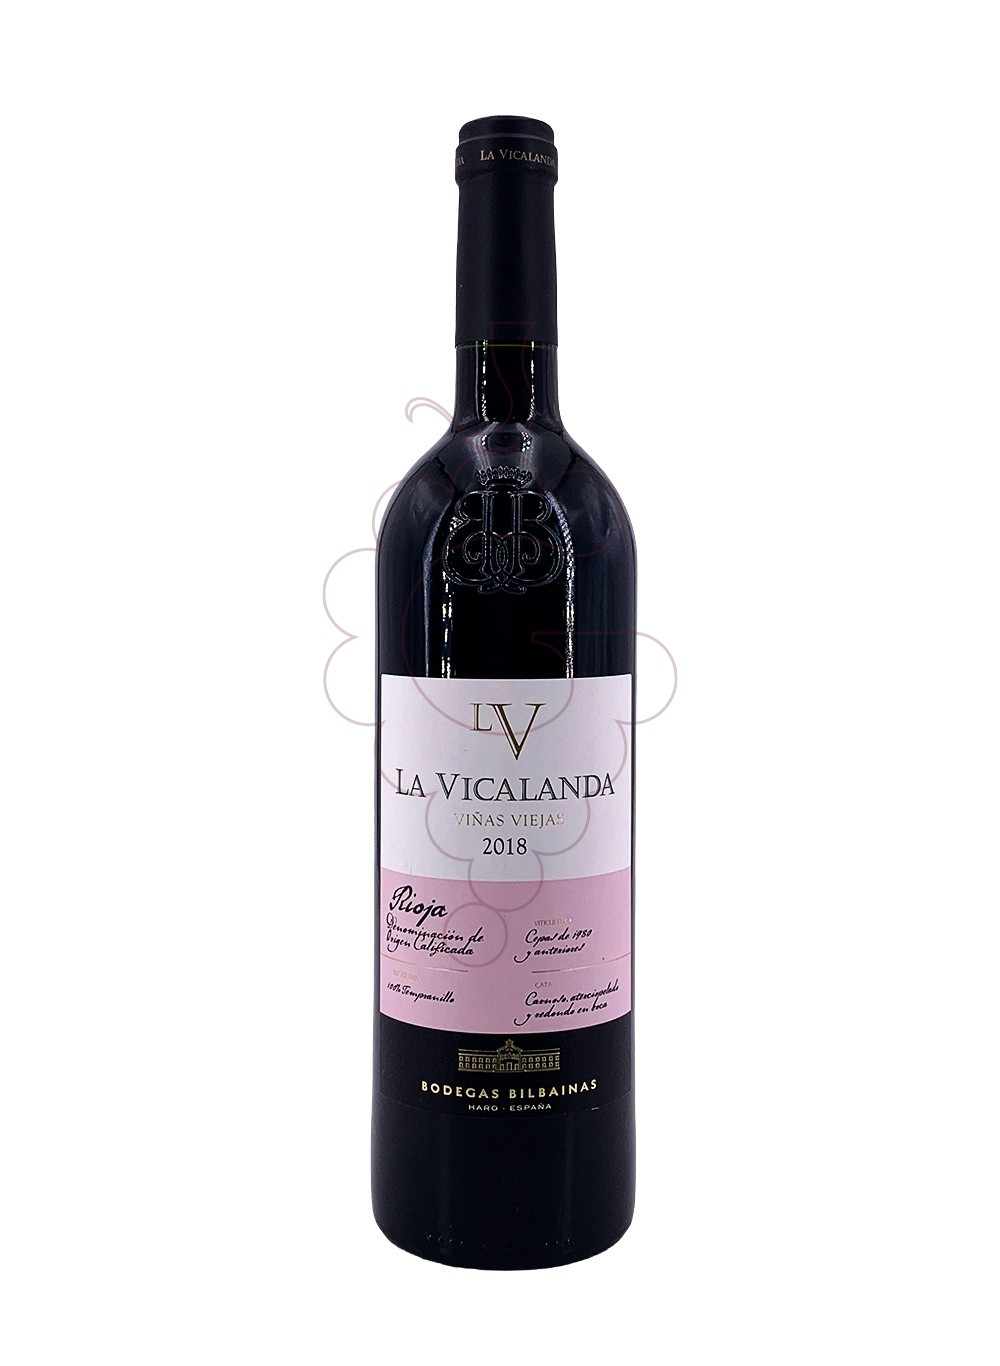 Photo La vicalanda vi?as viejas 2018 red wine